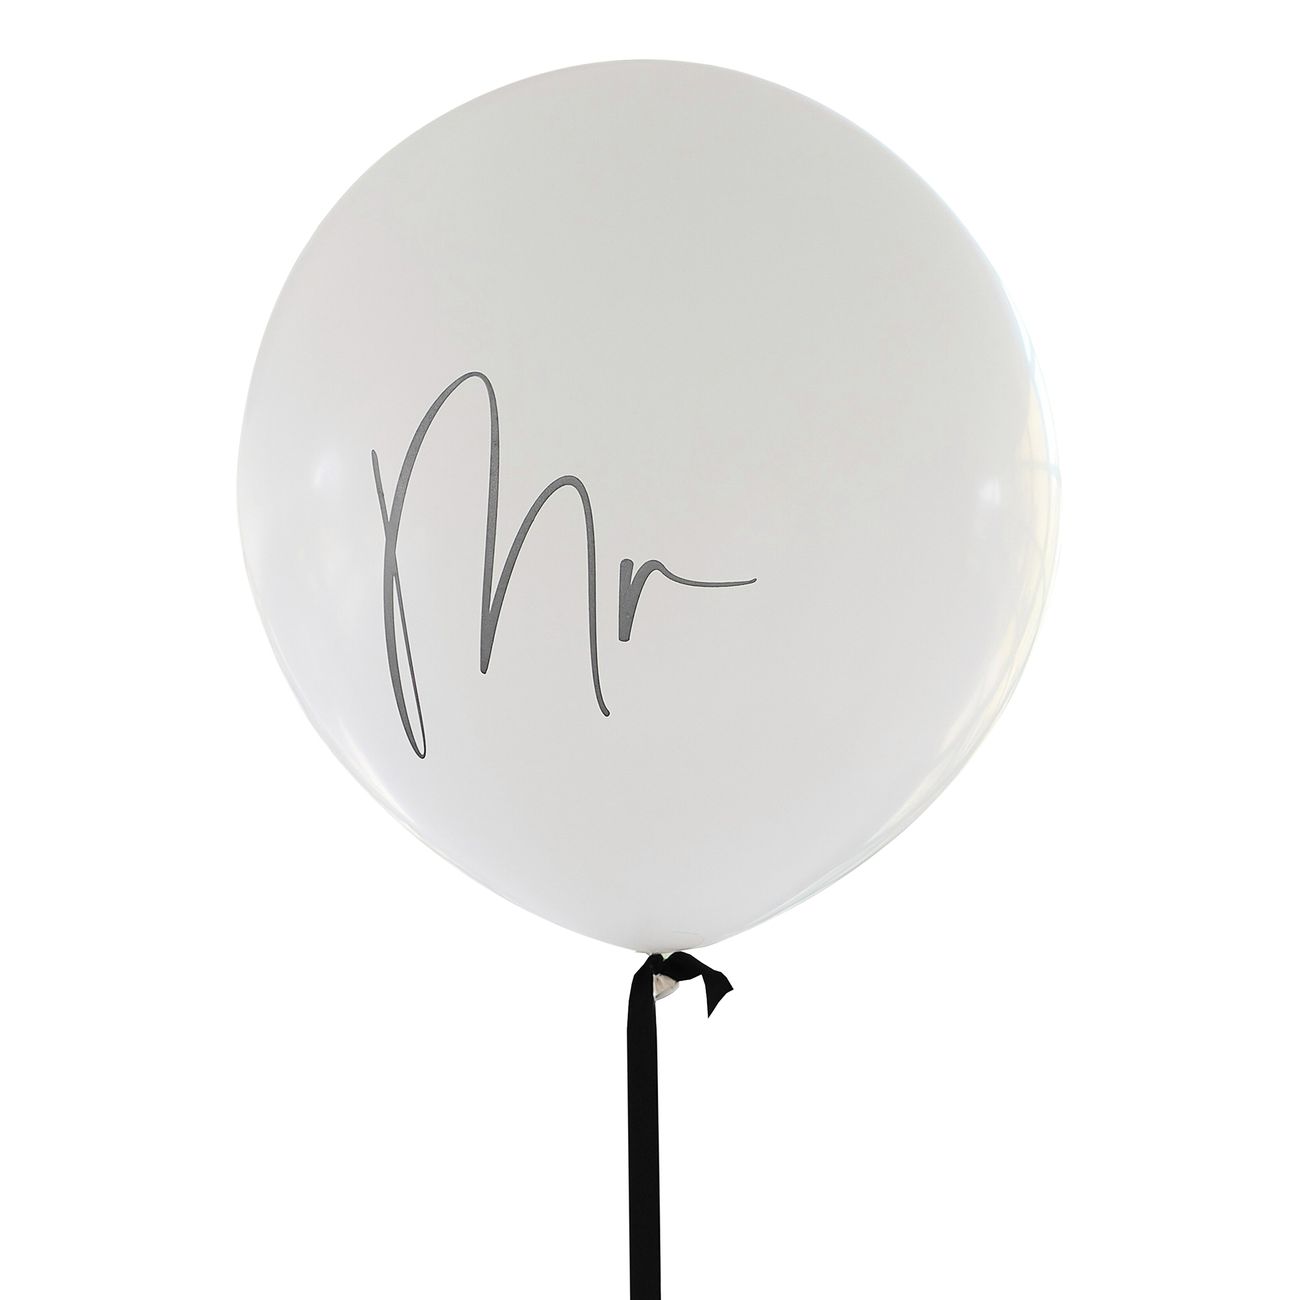 vit-jatteballong-mr-92972-3